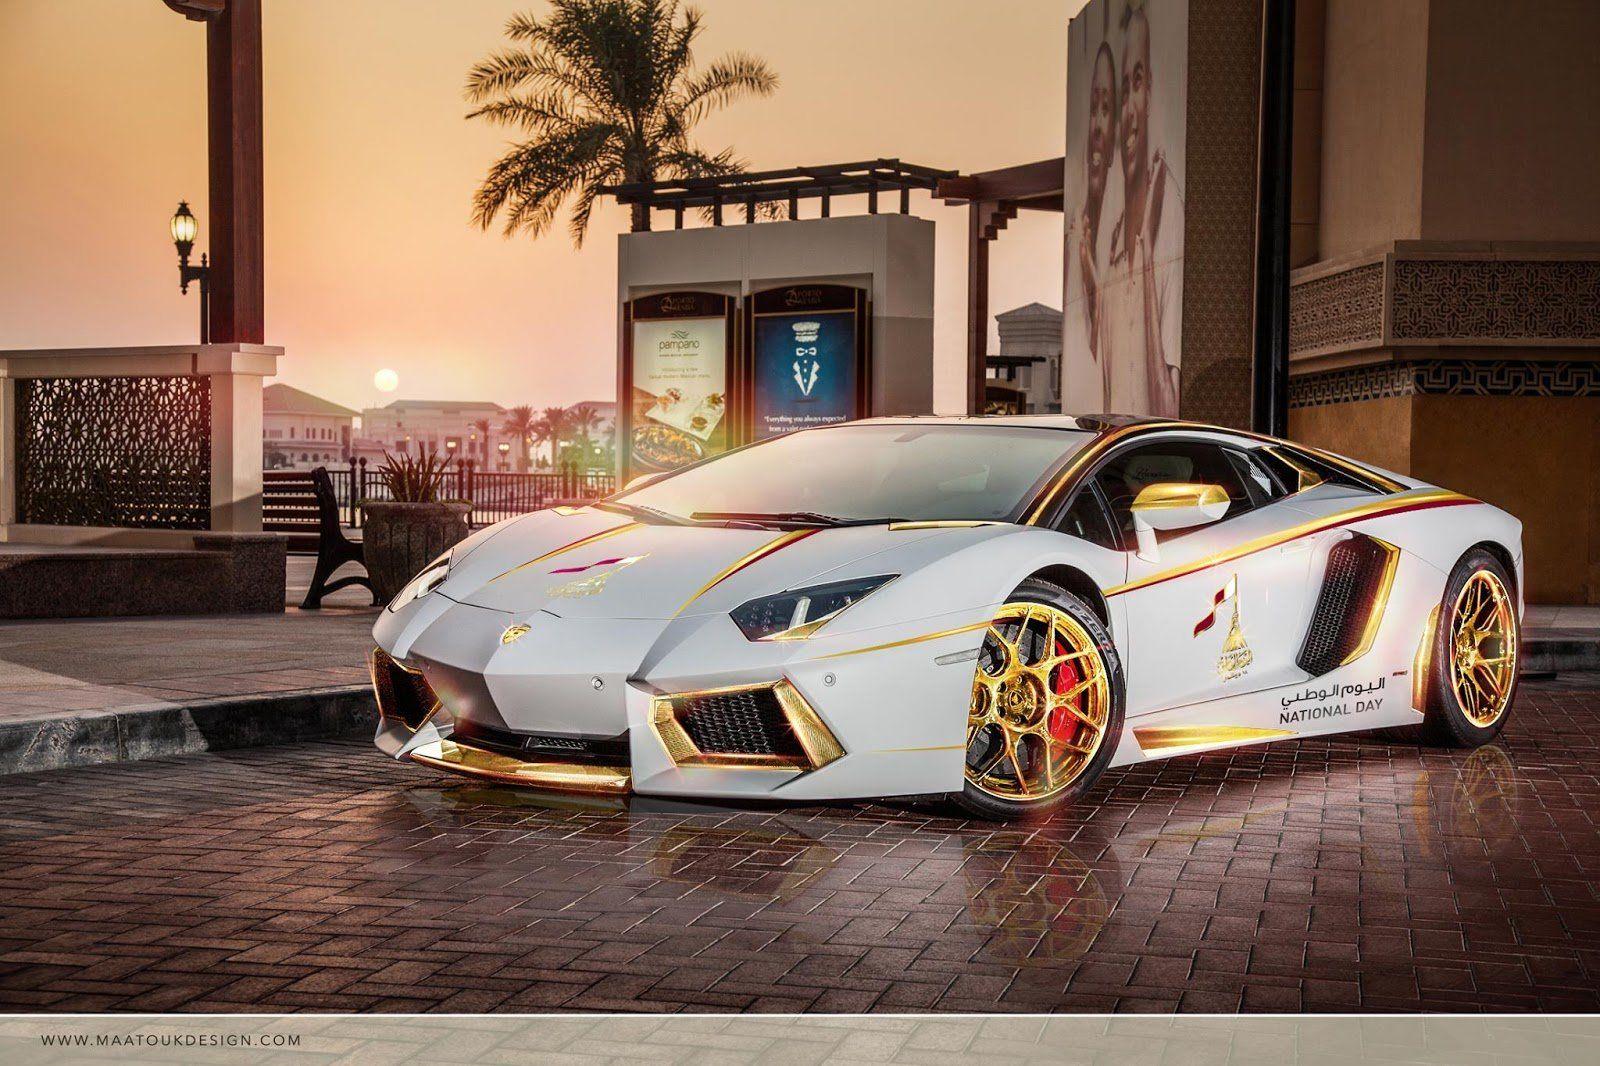 Siêu xe Lamborghini là biểu tượng của tốc độ và sự sang trọng. Nếu bạn muốn cảm nhận đẳng cấp của một siêu xe, hãy xem hình ảnh về Lamborghini.